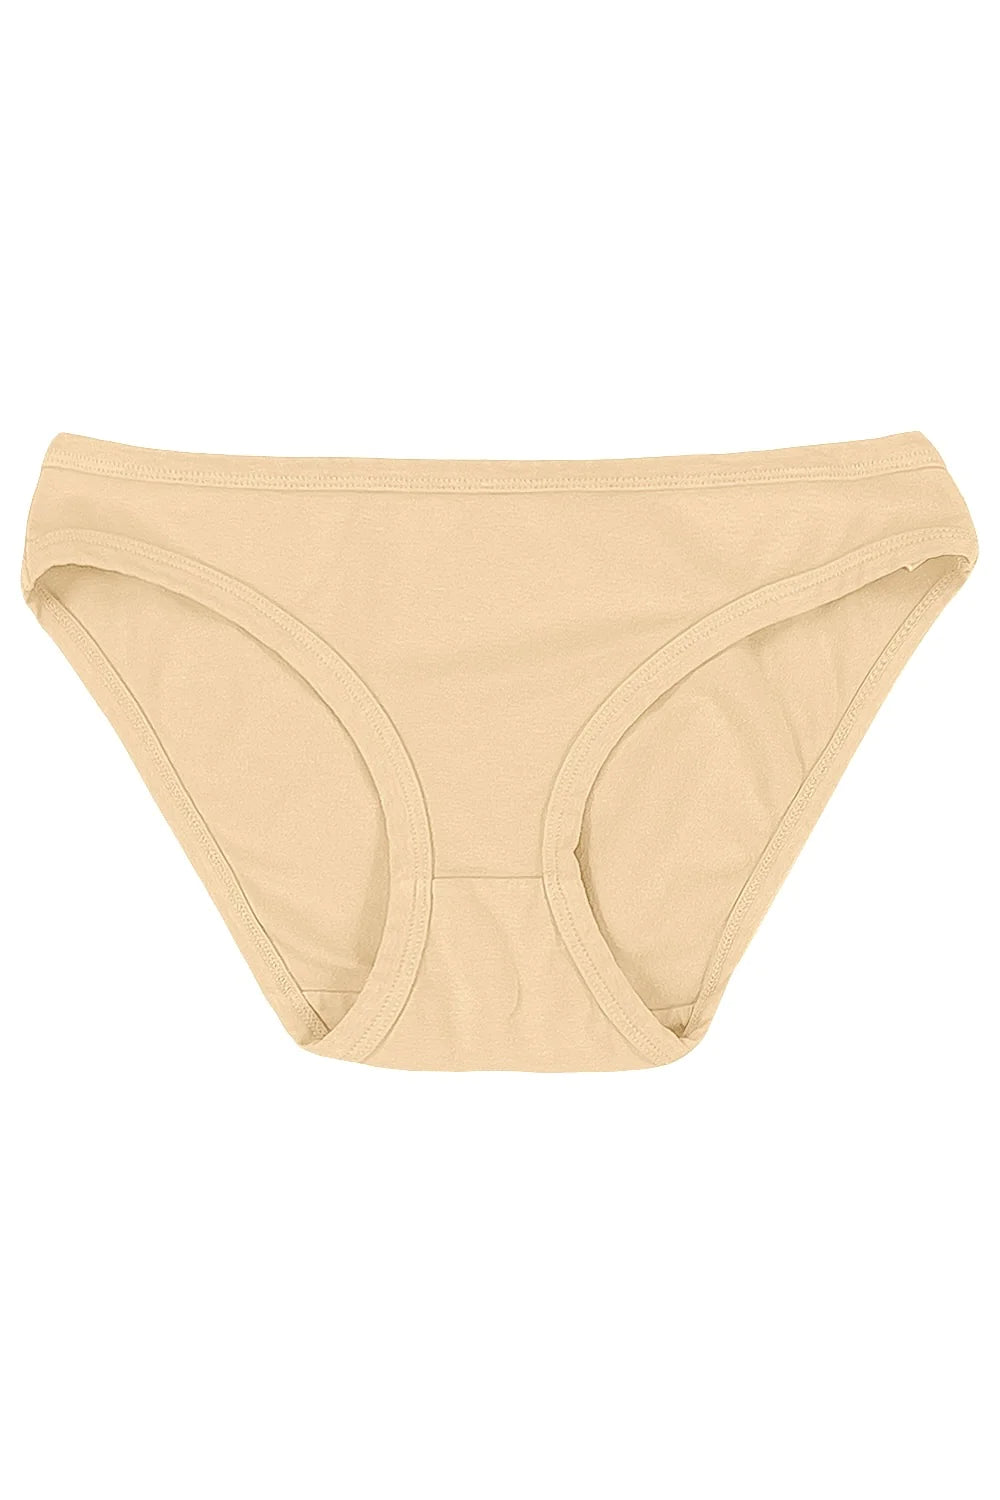 Women’s Underwear in Oat